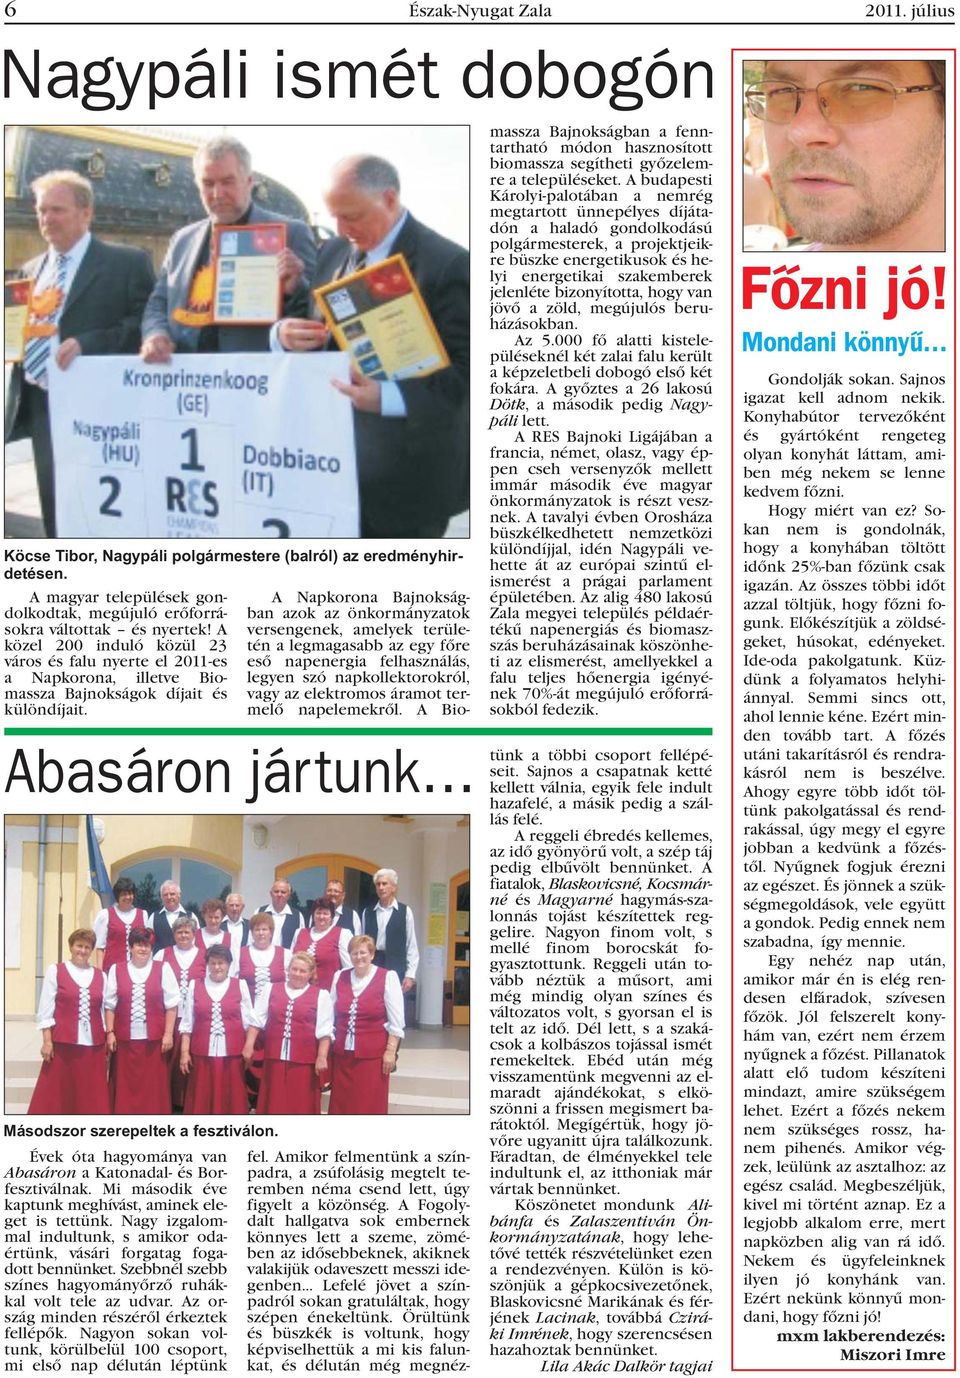 A közel 200 induló közül 23 város és falu nyerte el 2011-es a Napkorona, illetve Biomassza Bajnokságok díjait és különdíjait. Abasáron jártunk Másodszor szerepeltek a fesztiválon.